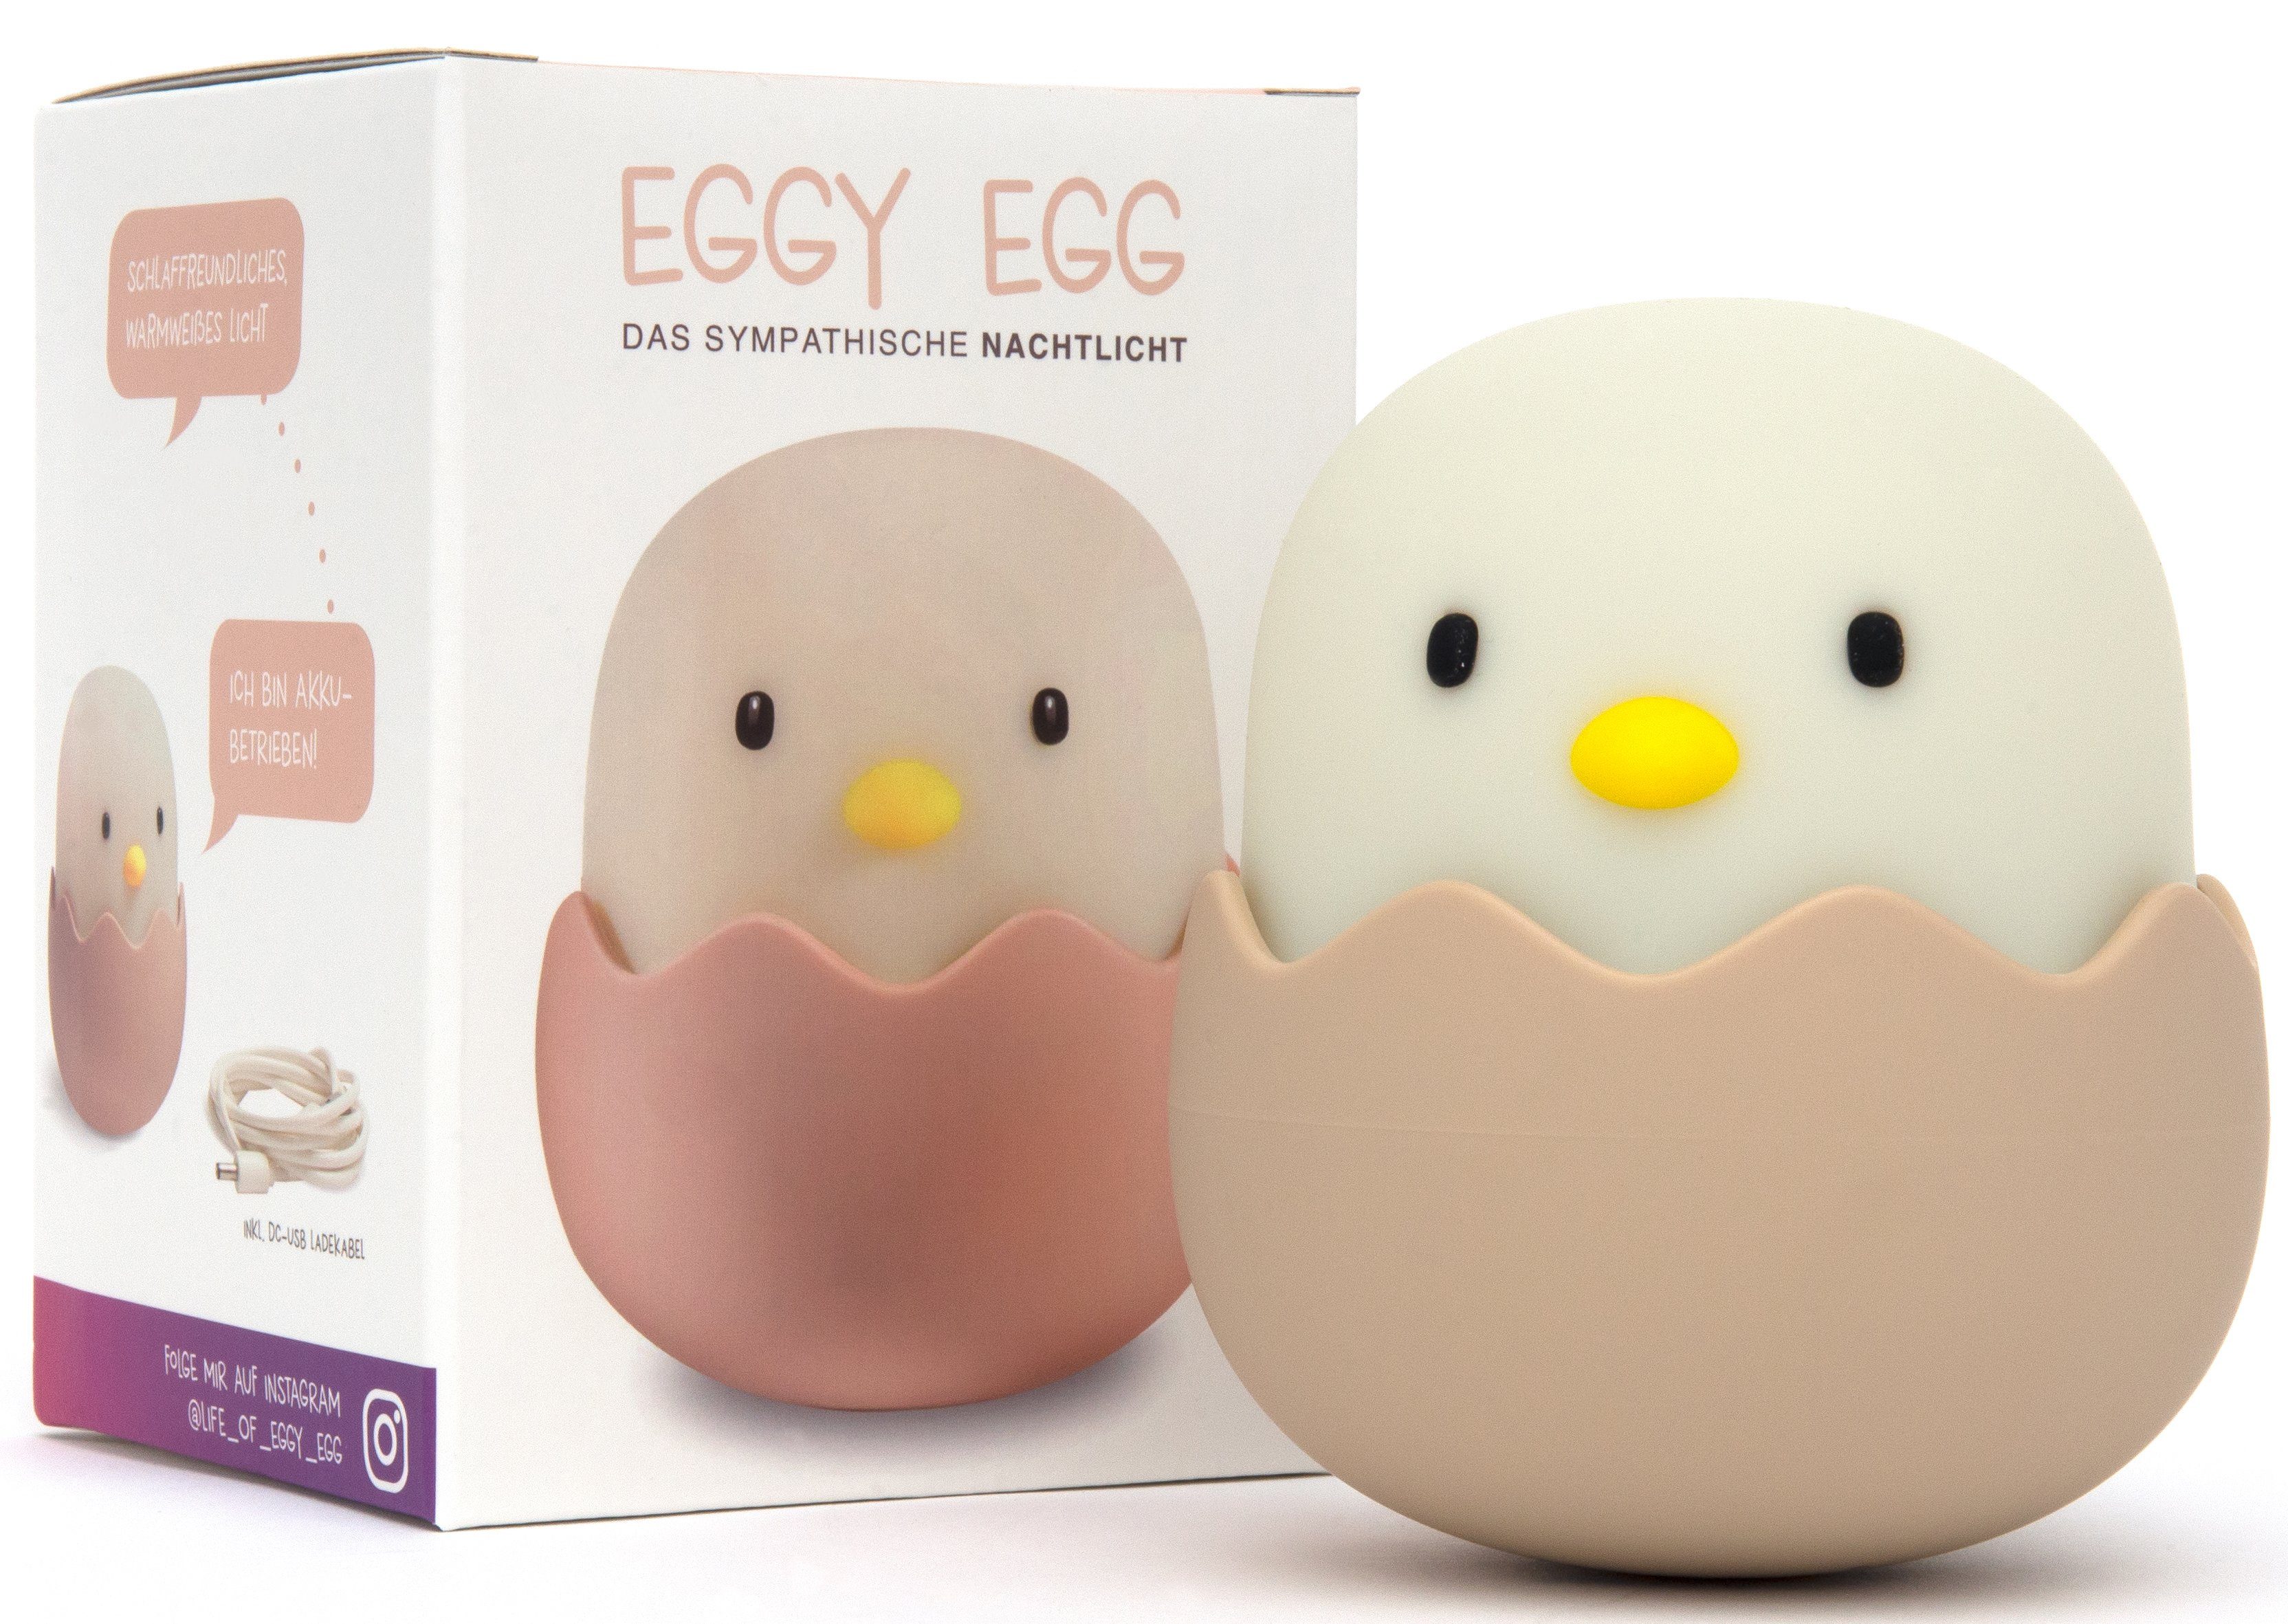 niermann LED Nachtlicht Eggy Egg, LED fest integriert, Nachtlicht Eggy Egg,  Freundliches, reduziertes Design + Angenehmes Licht (schlaffreundlich)